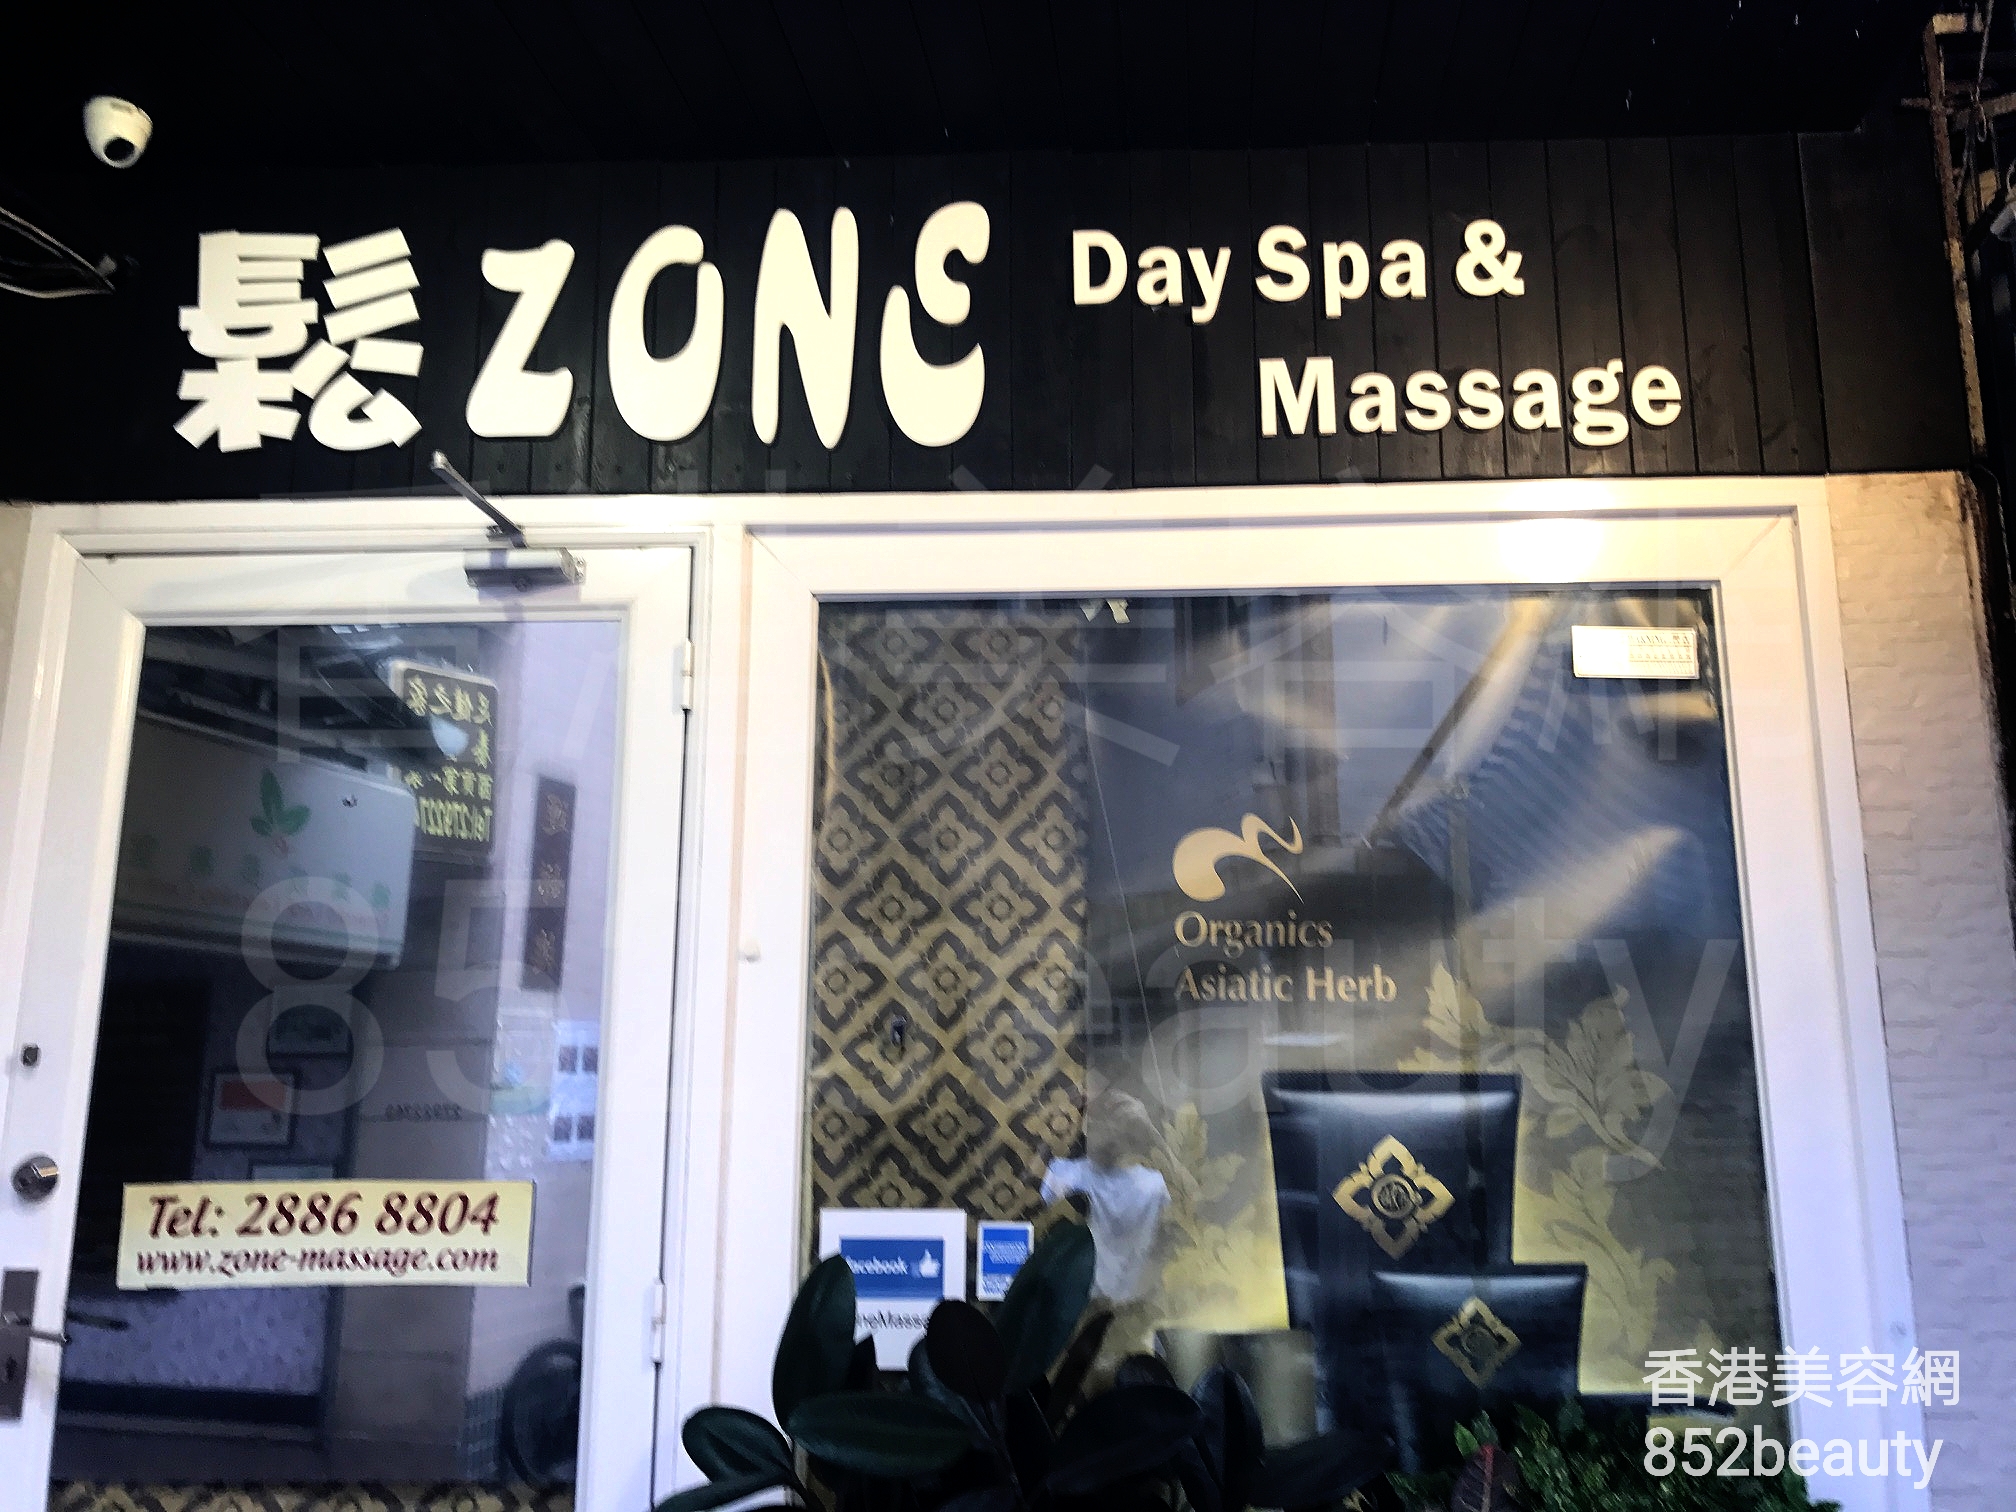 美甲: 鬆Zone Day Spa & Massage